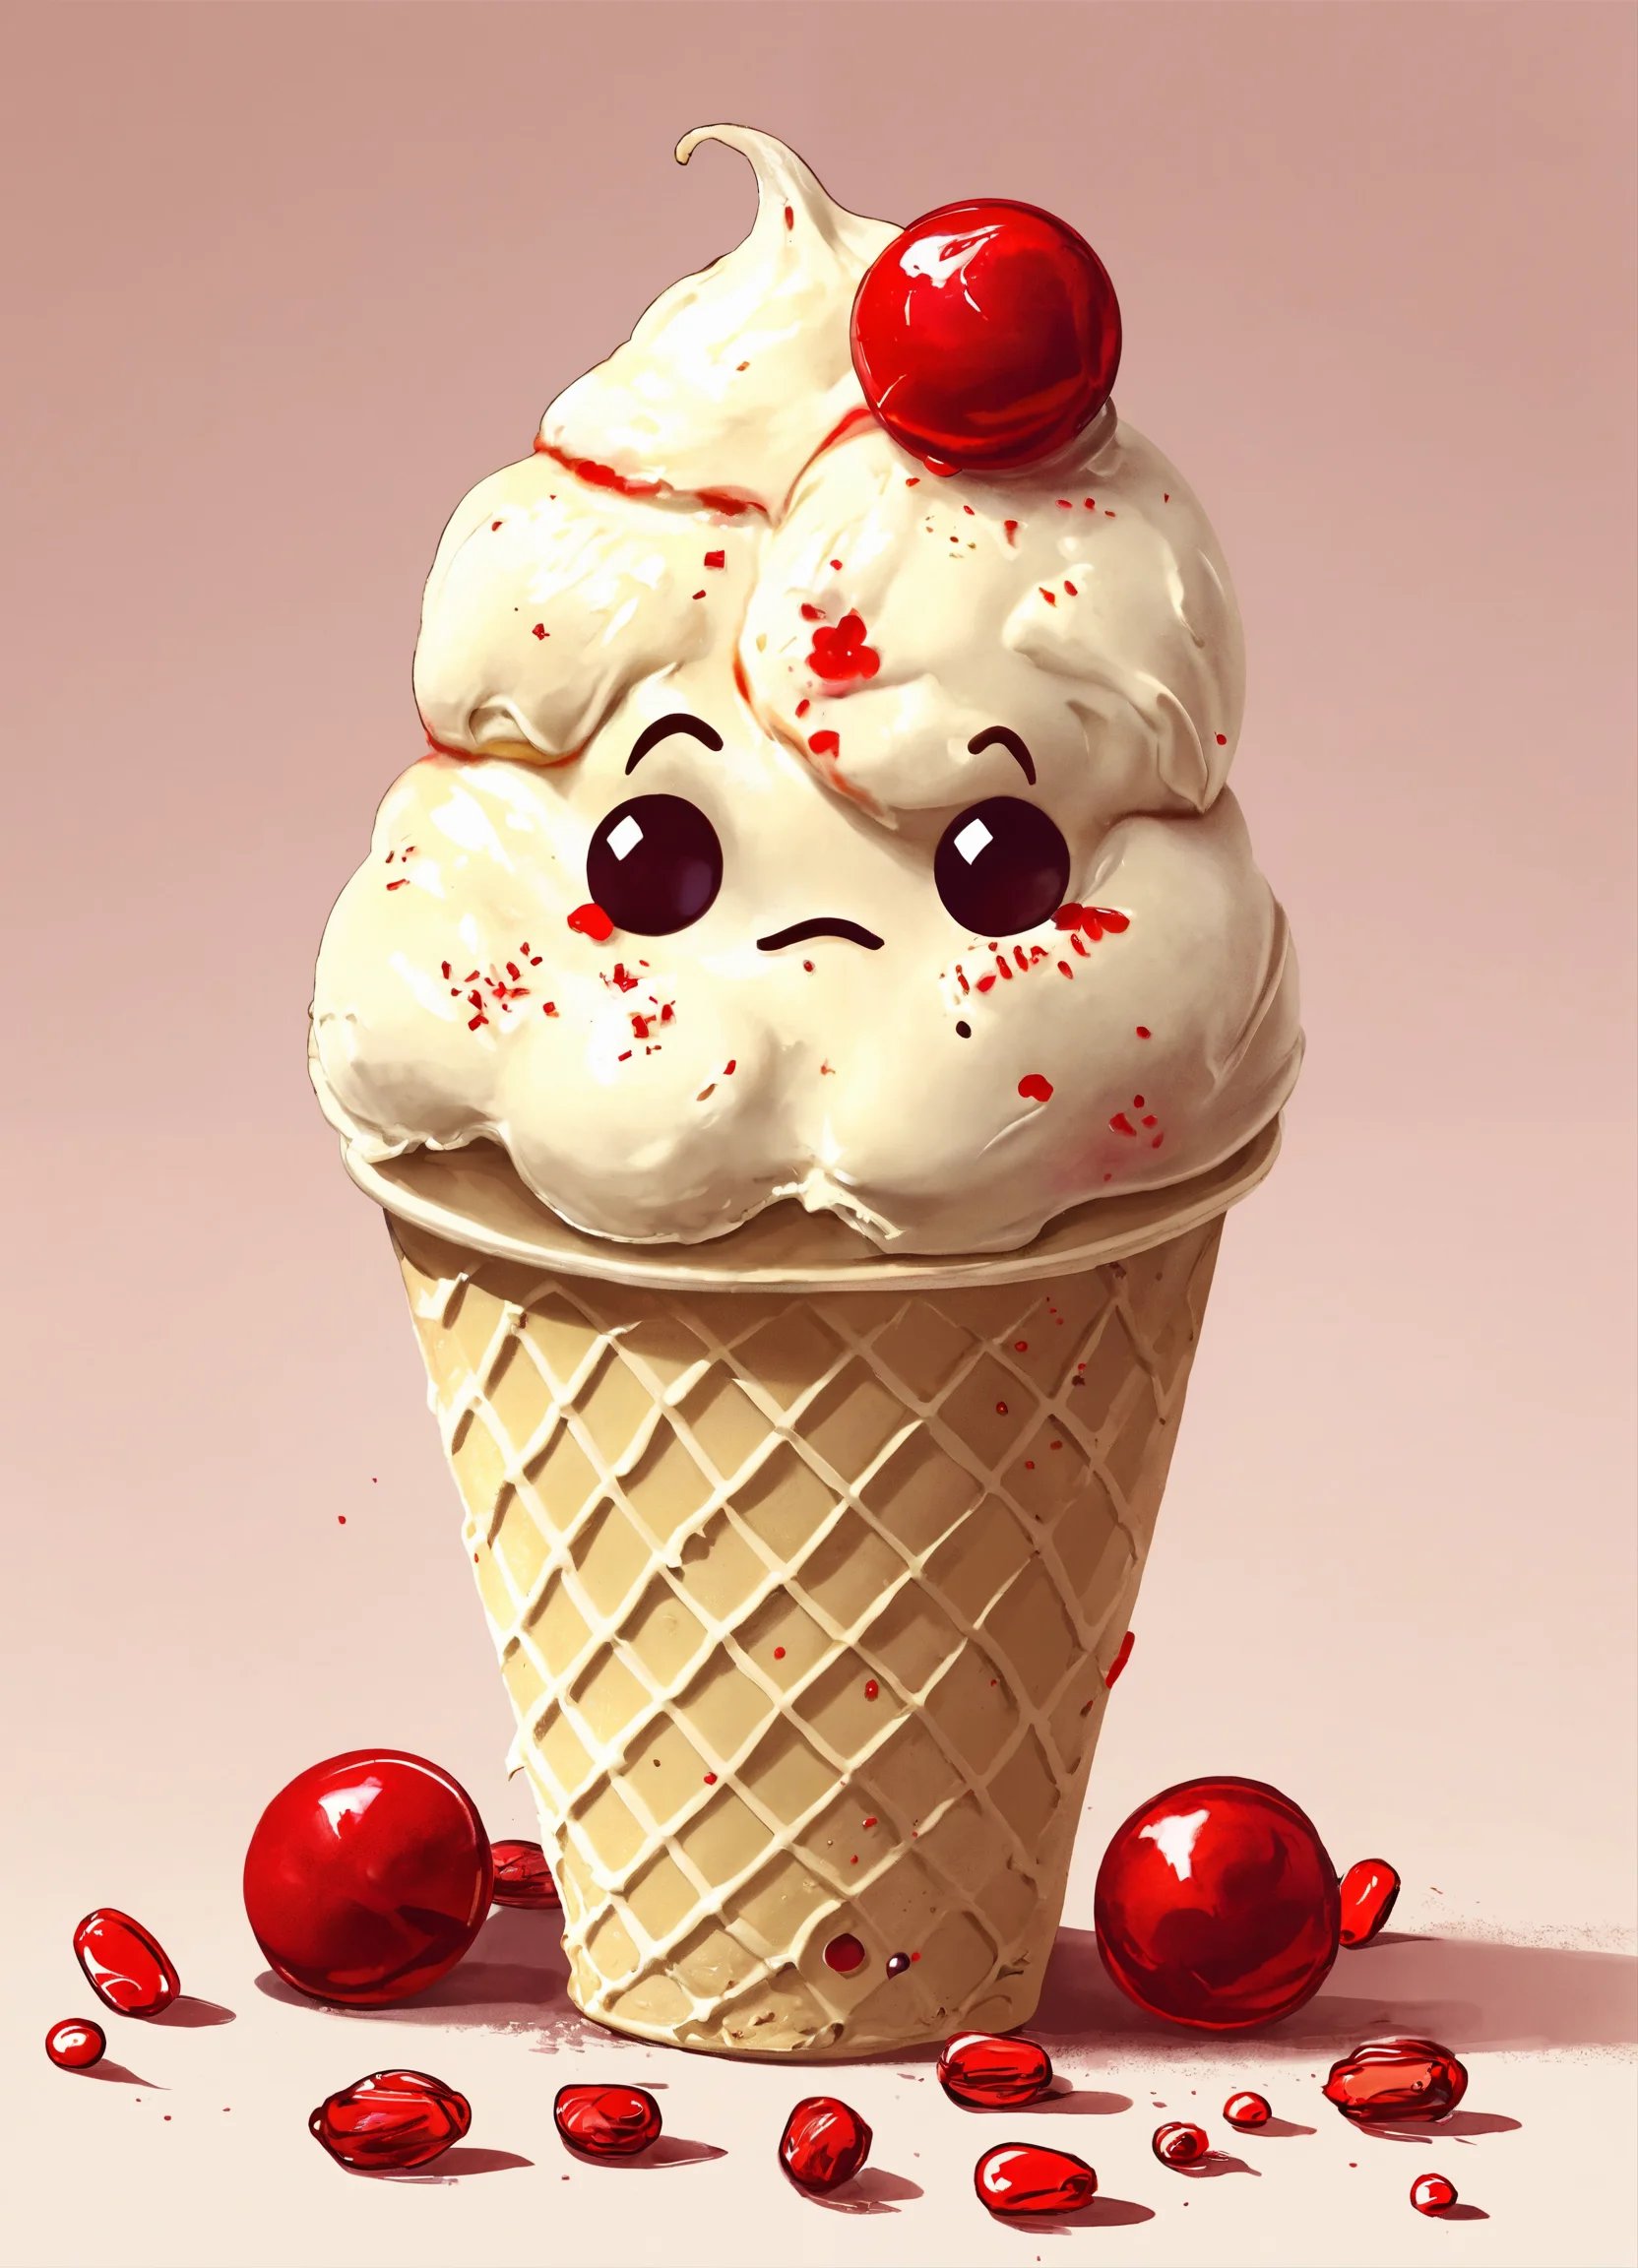 גביע גלידה עצוב עם גלידת וניל אמריקאית עם המון סוכ (2).jpg